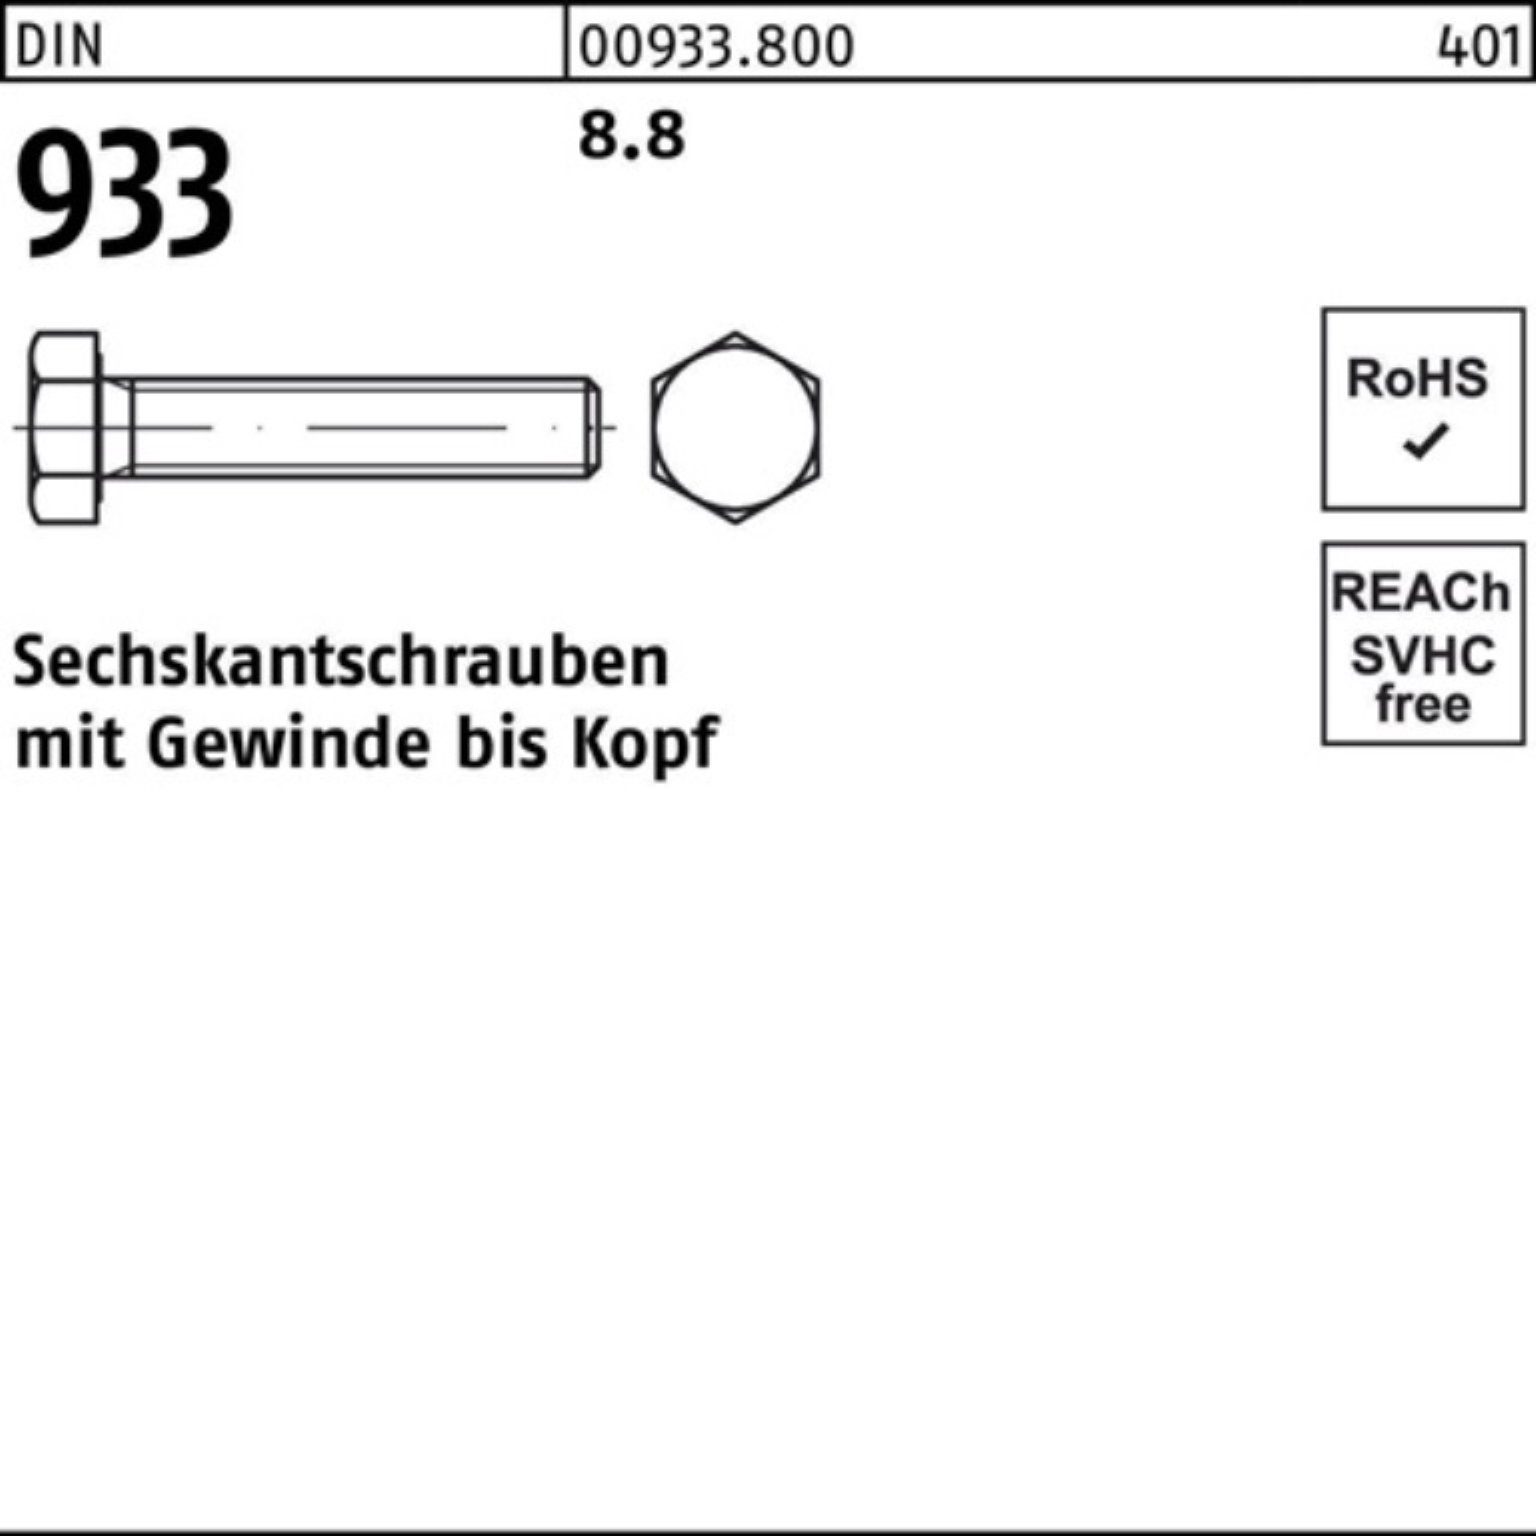 100er Sechskantschraube 933 VG 1 200 DIN DIN 8.8 Pack M33x 933 Stück Sechskantschraube Reyher